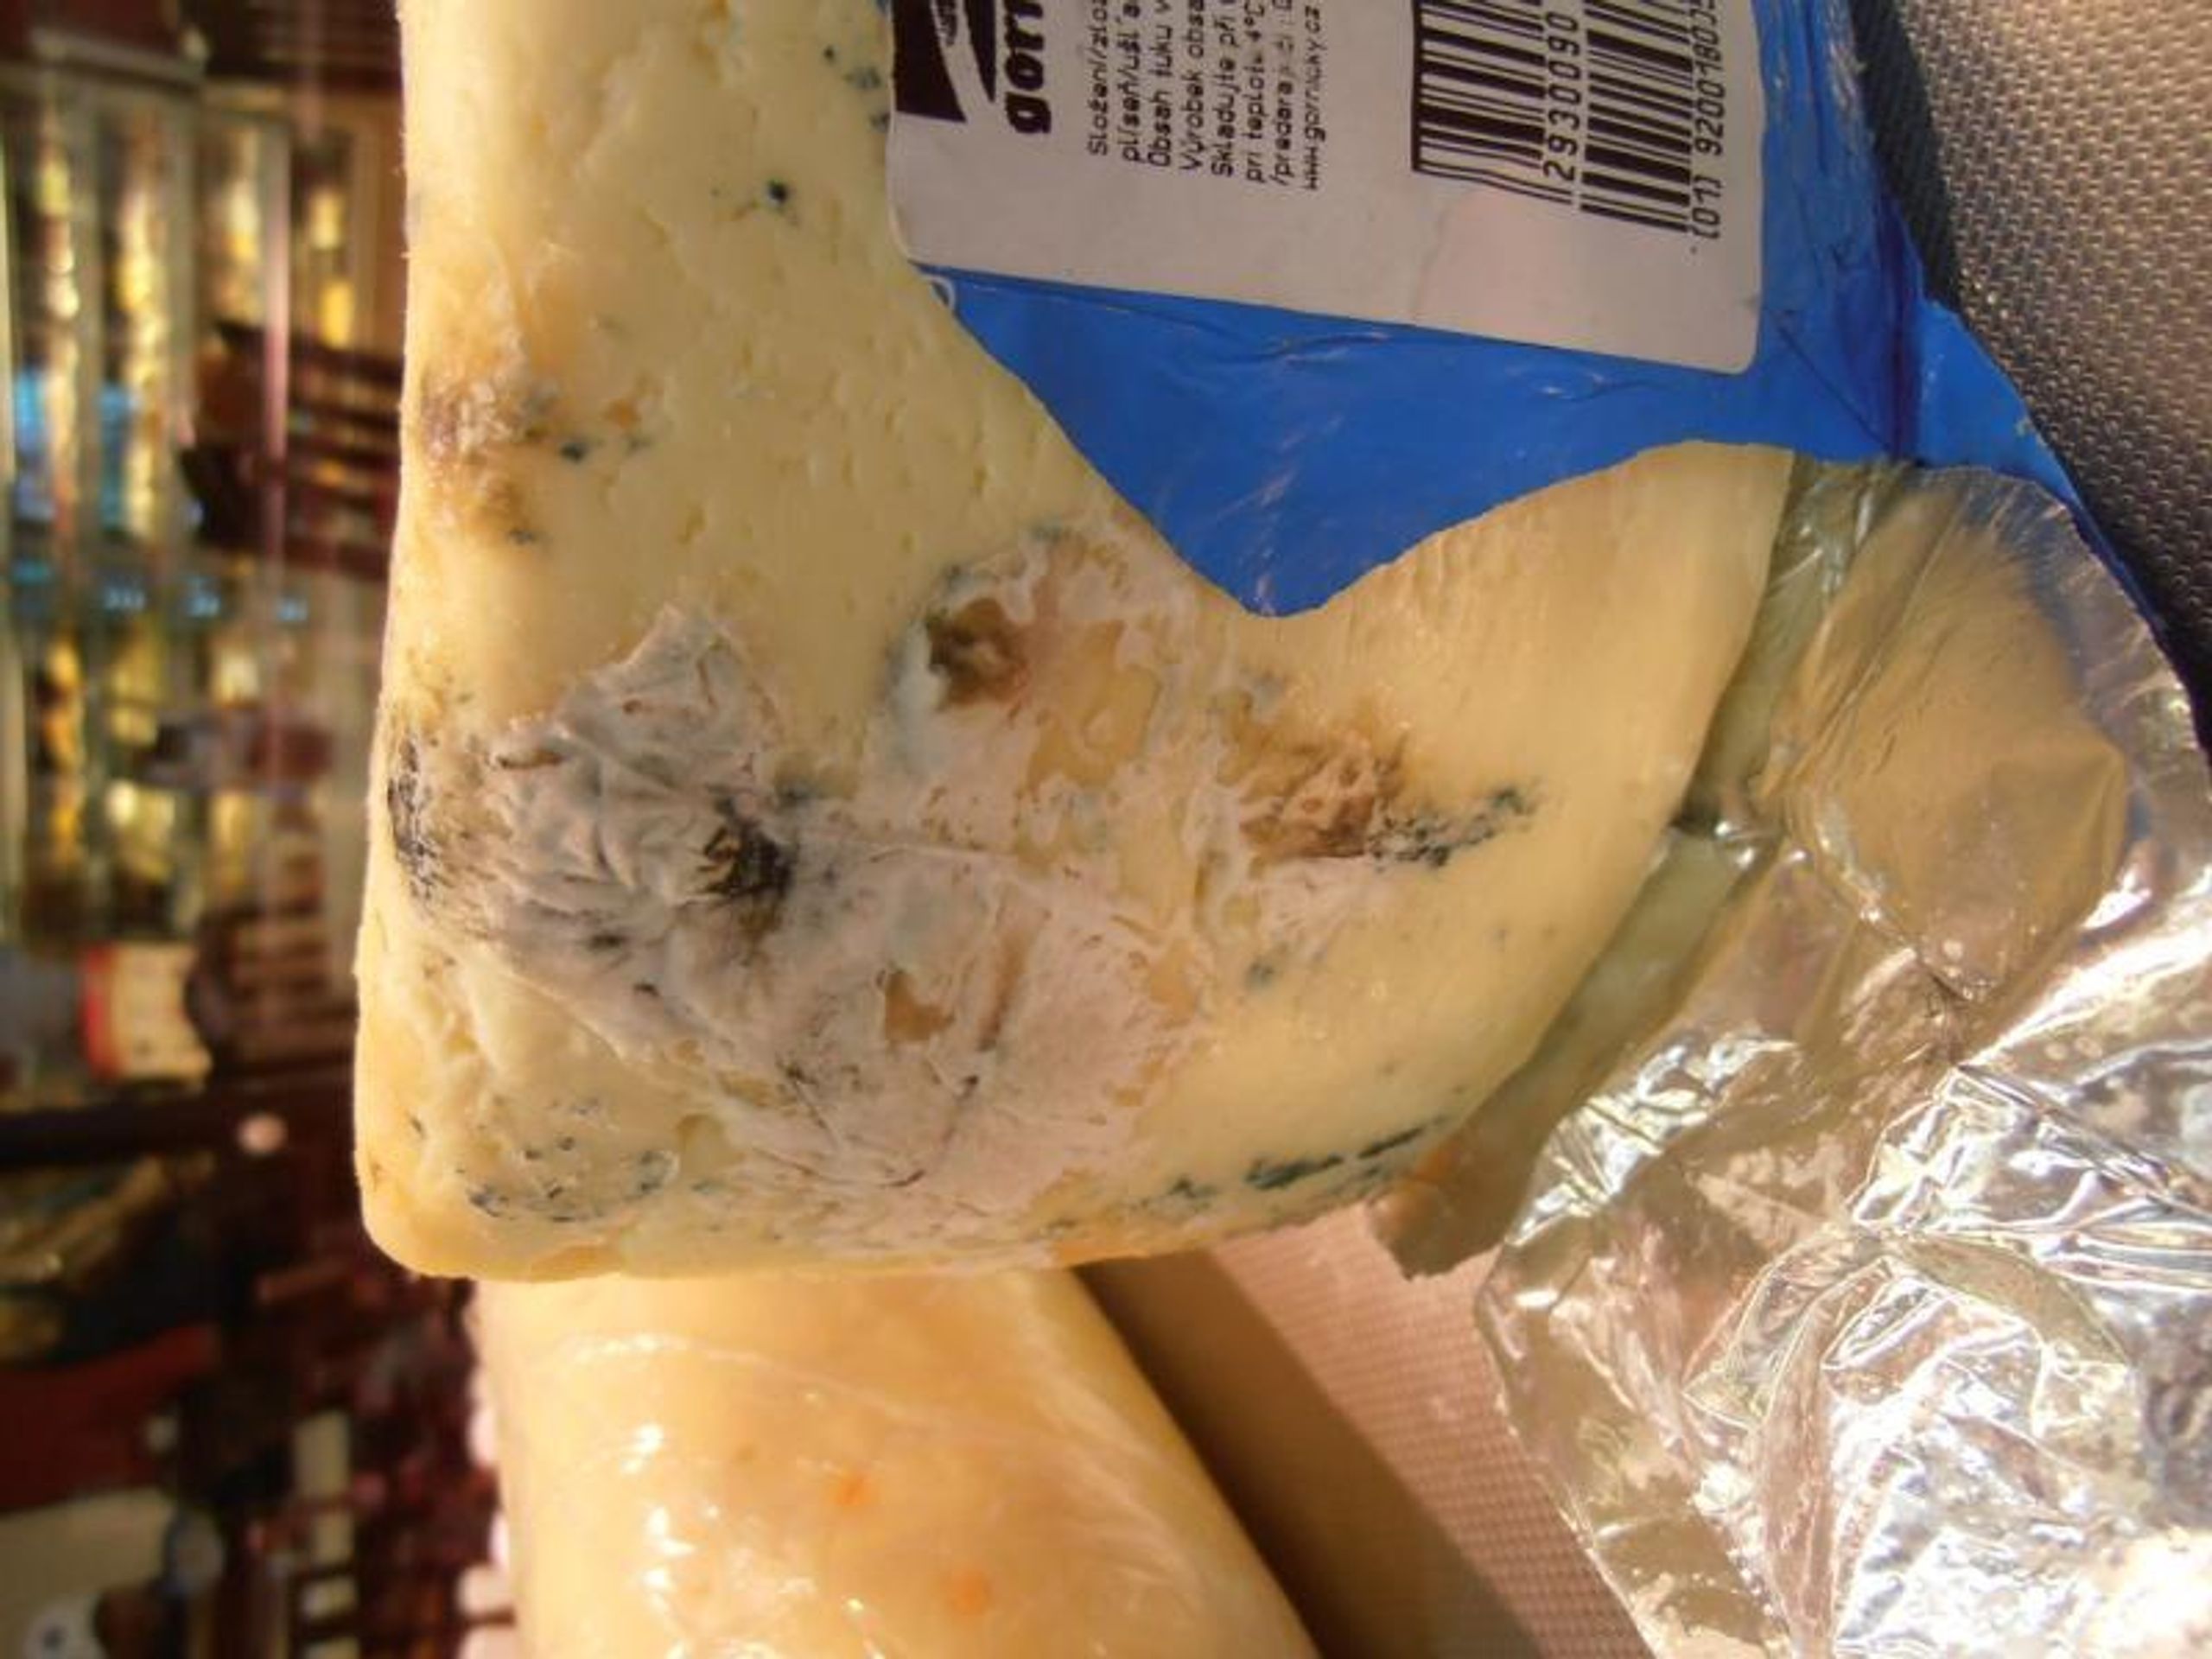 Potraviny na pranýři: Sýr Mont Noris 50 % s modrou plísní - 2 - Potraviny na pranýři: Sýr Mont Noris 50 % s modrou plísní (2/3)